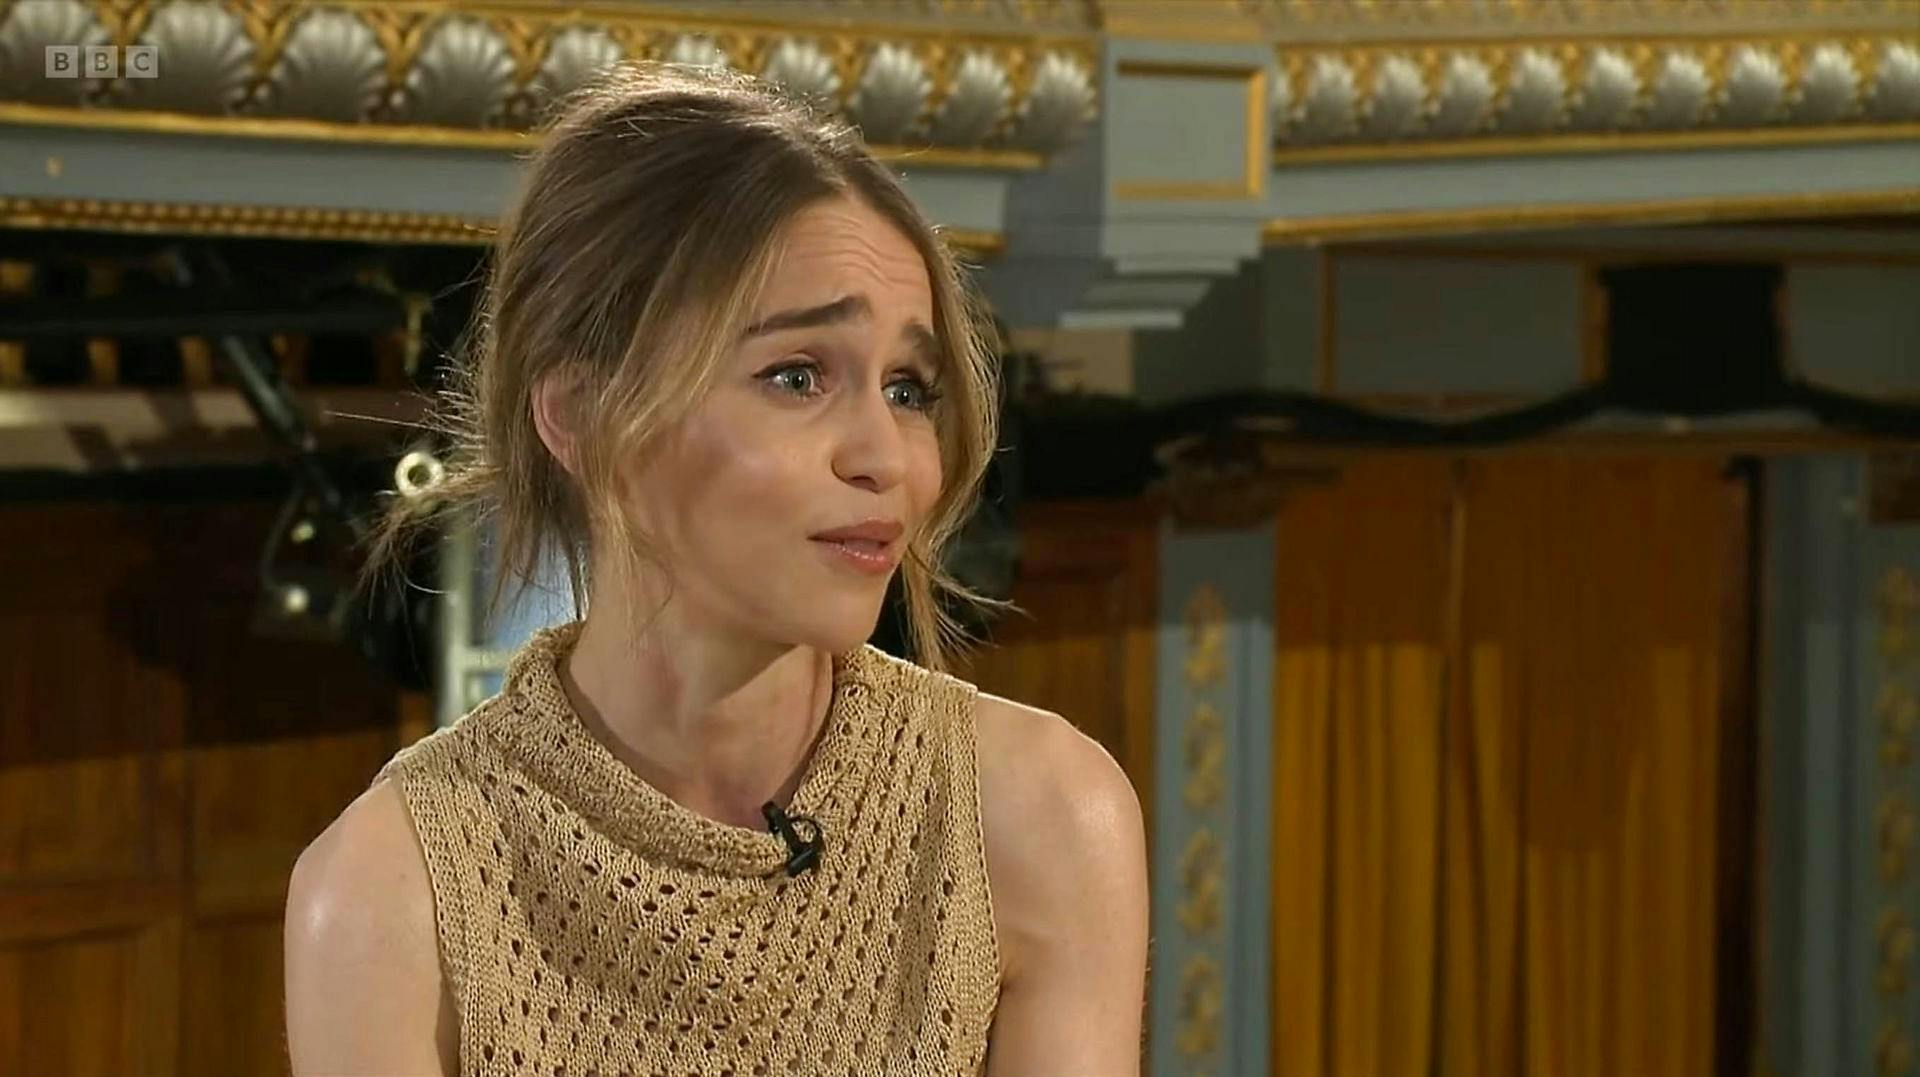 Her ses Emilia Clarke under det nye interview med BBC.